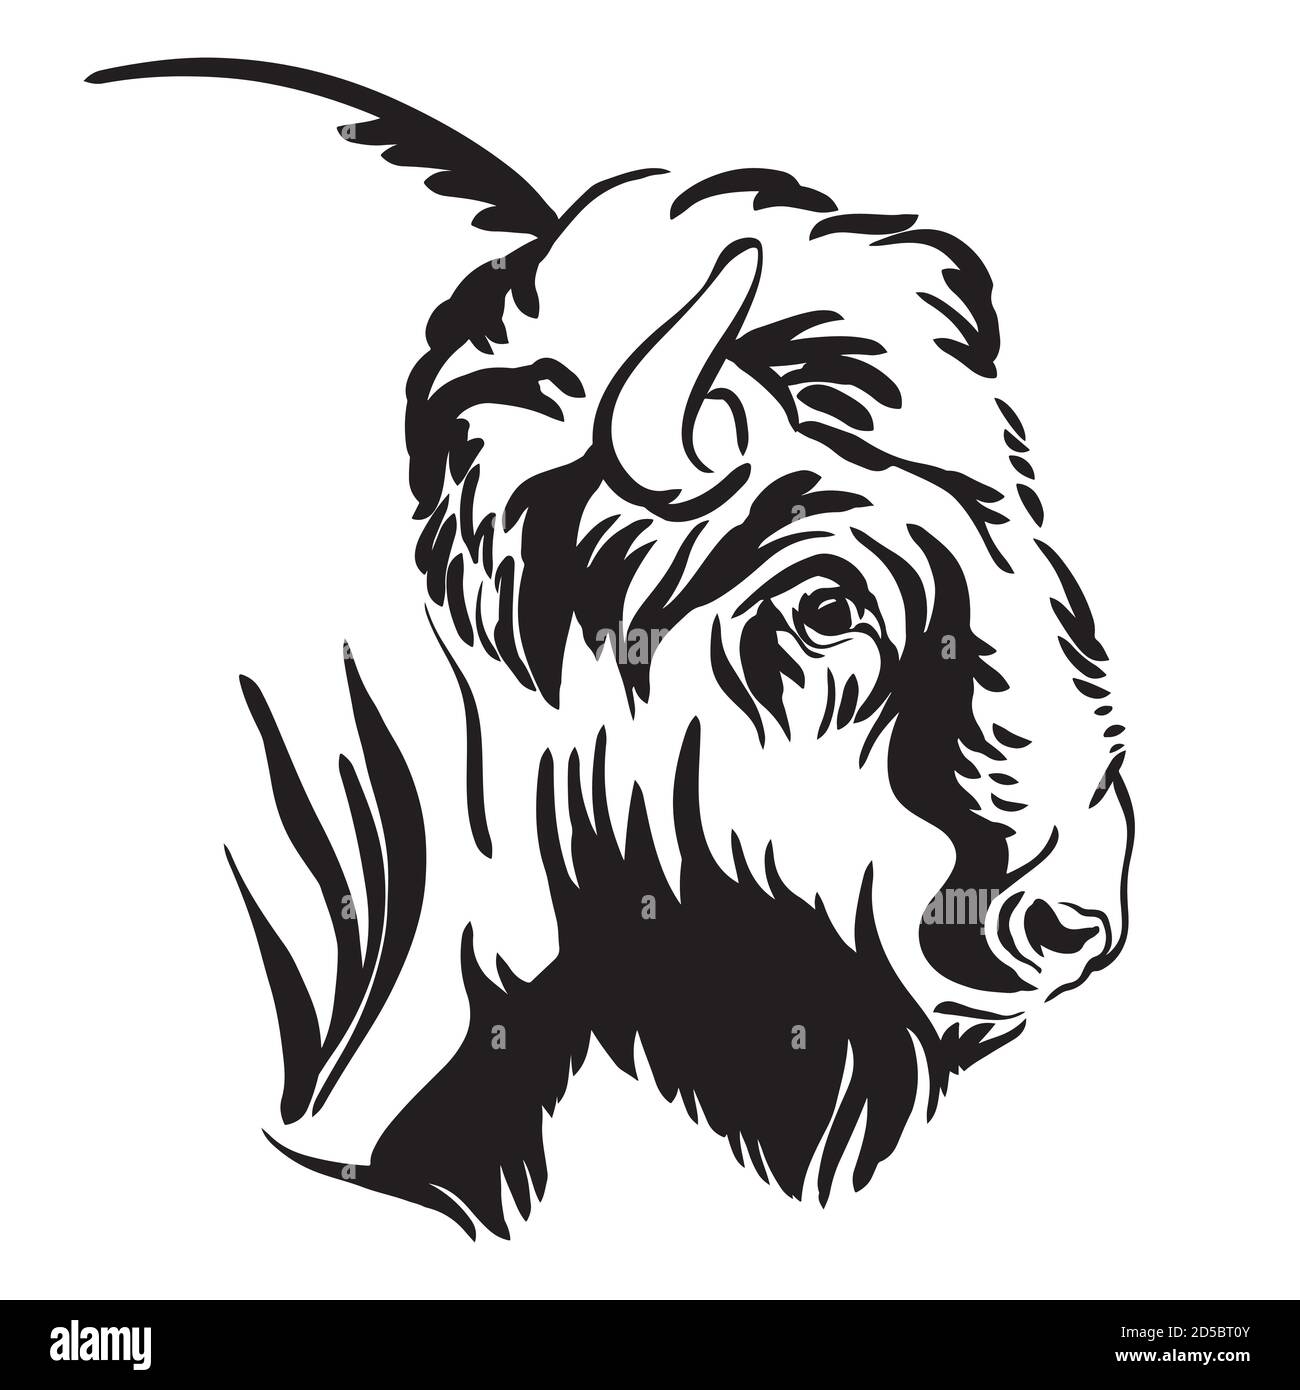 Portrait décoratif de l'illustration vectorielle de bison en noir isolée sur fond blanc. Image de modèle de gravure de taureau pour l'étiquette, le logo, le dessin Illustration de Vecteur